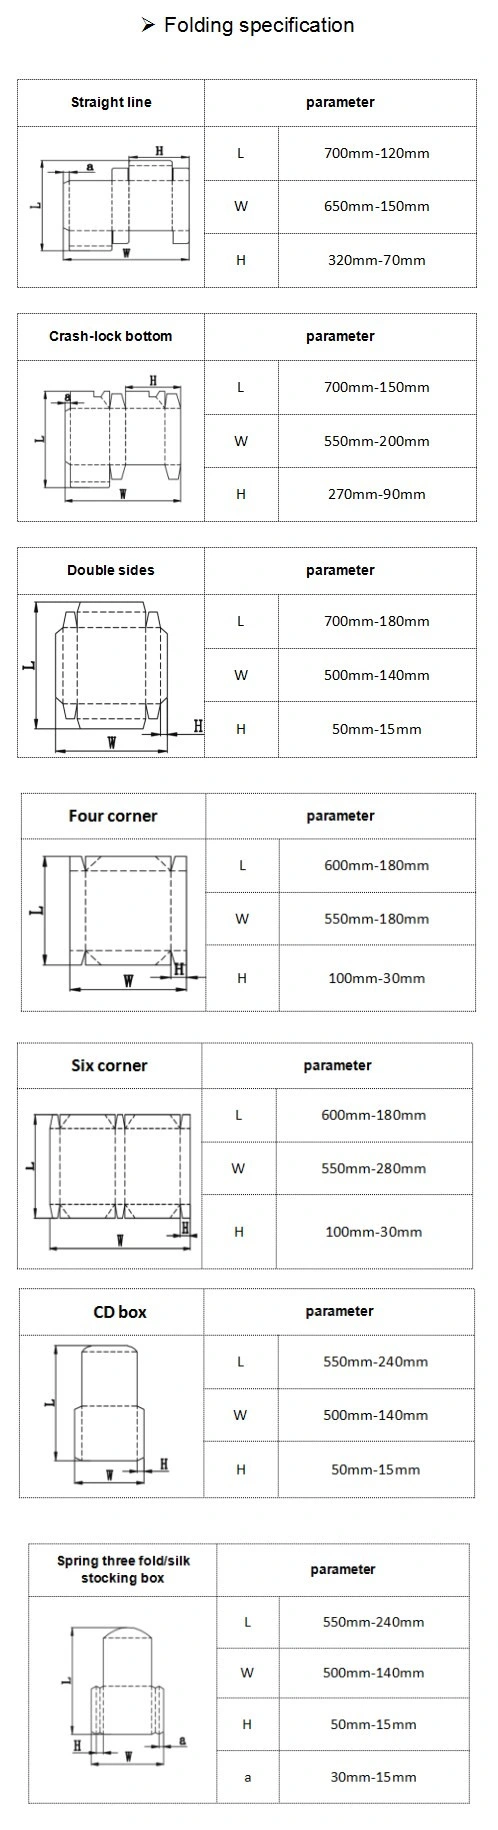 High Quality Cardboard Corrugated Carton Box Folder Gluer (XCS-650PC-A)